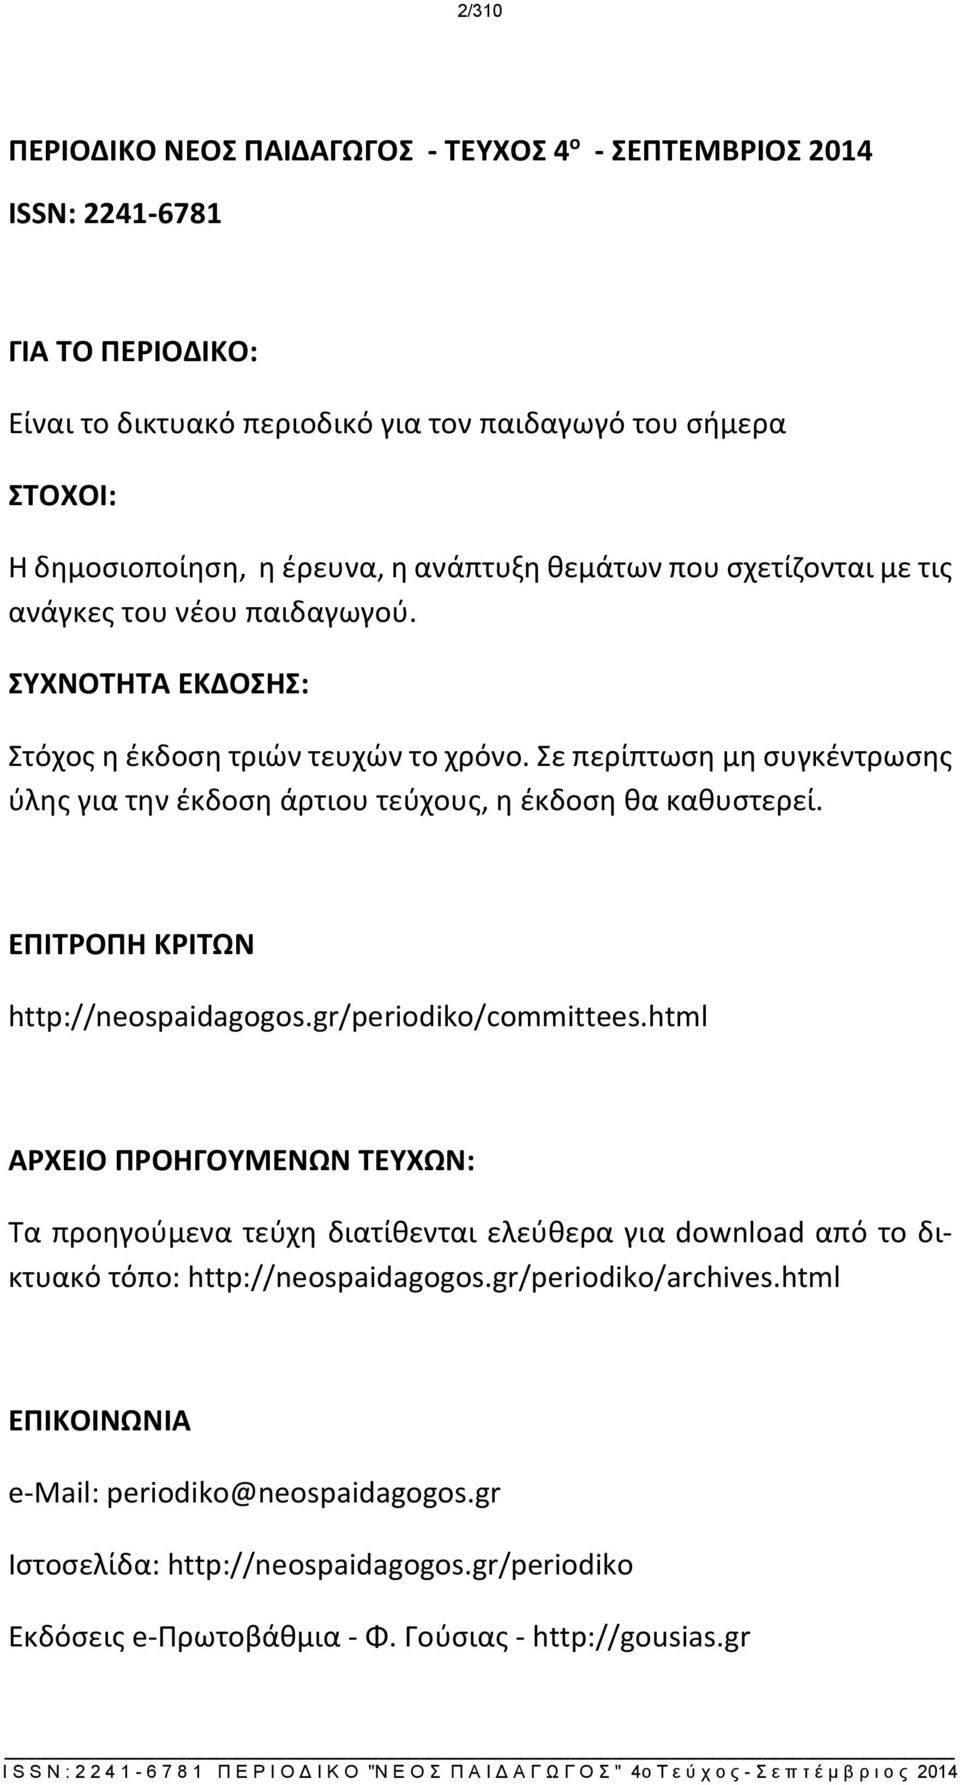 Σε περίπτωση μη συγκέντρωσης ύλης για την έκδοση άρτιου τεύχους, η έκδοση θα καθυστερεί. ΕΠΙΤΡΟΠΗ ΚΡΙΤΩΝ http://neospaidagogos.gr/periodiko/committees.